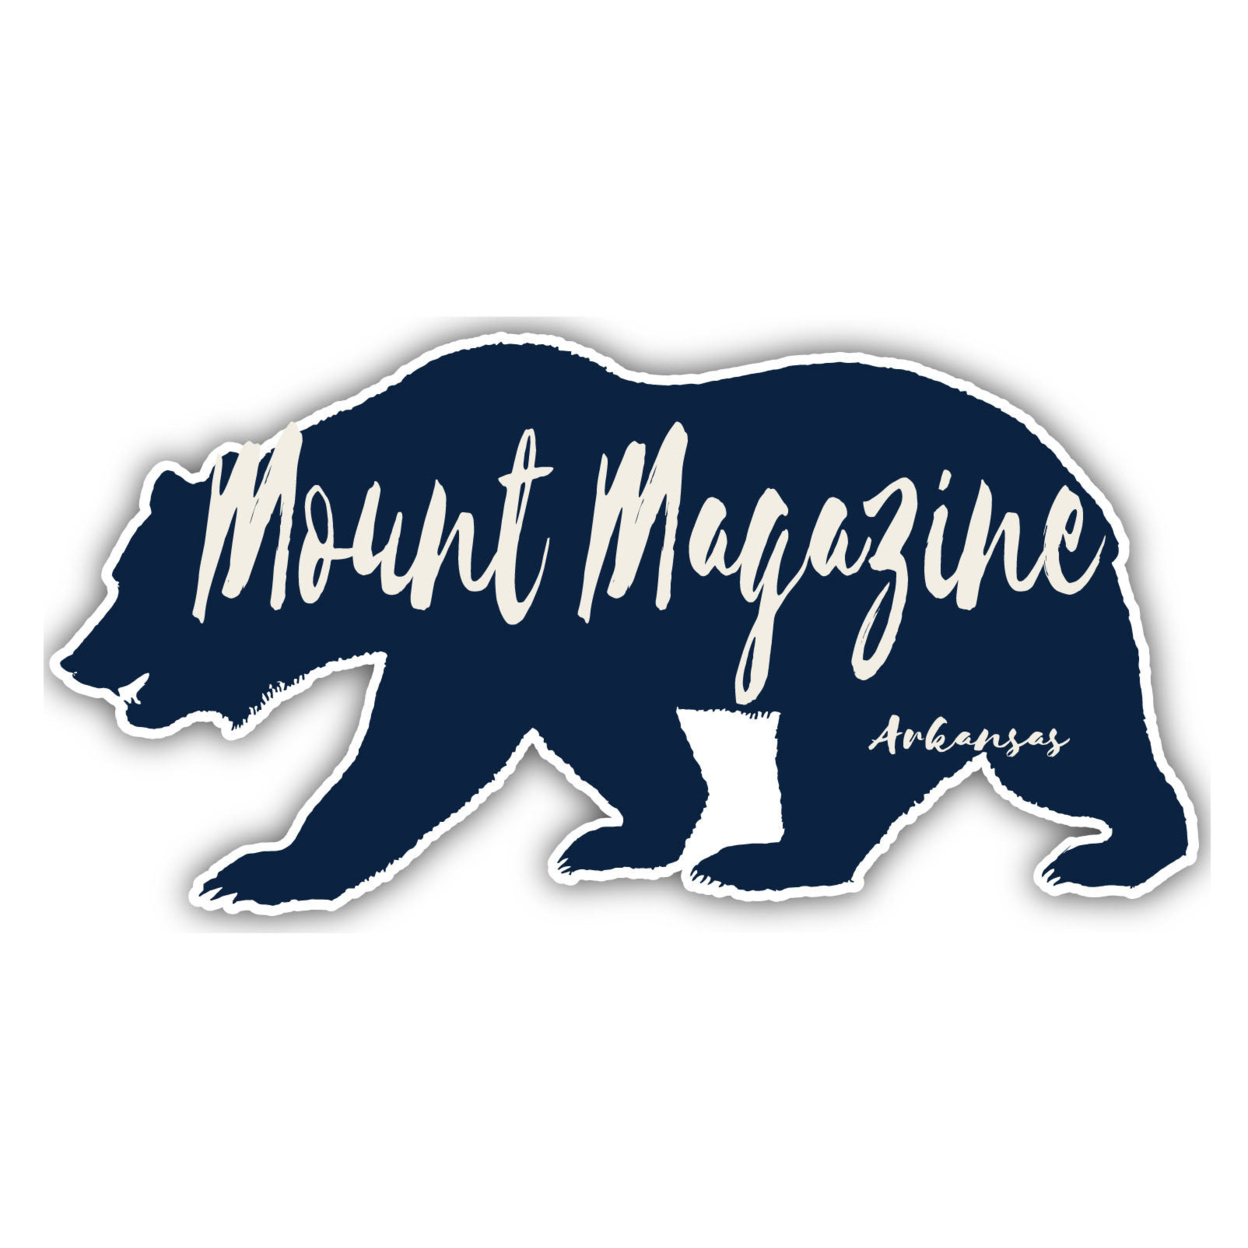 Mount Magazine Arkansas Souvenir Decorative Stickers (Choose Theme And Size) - Single Unit, 2-Inch, Tent